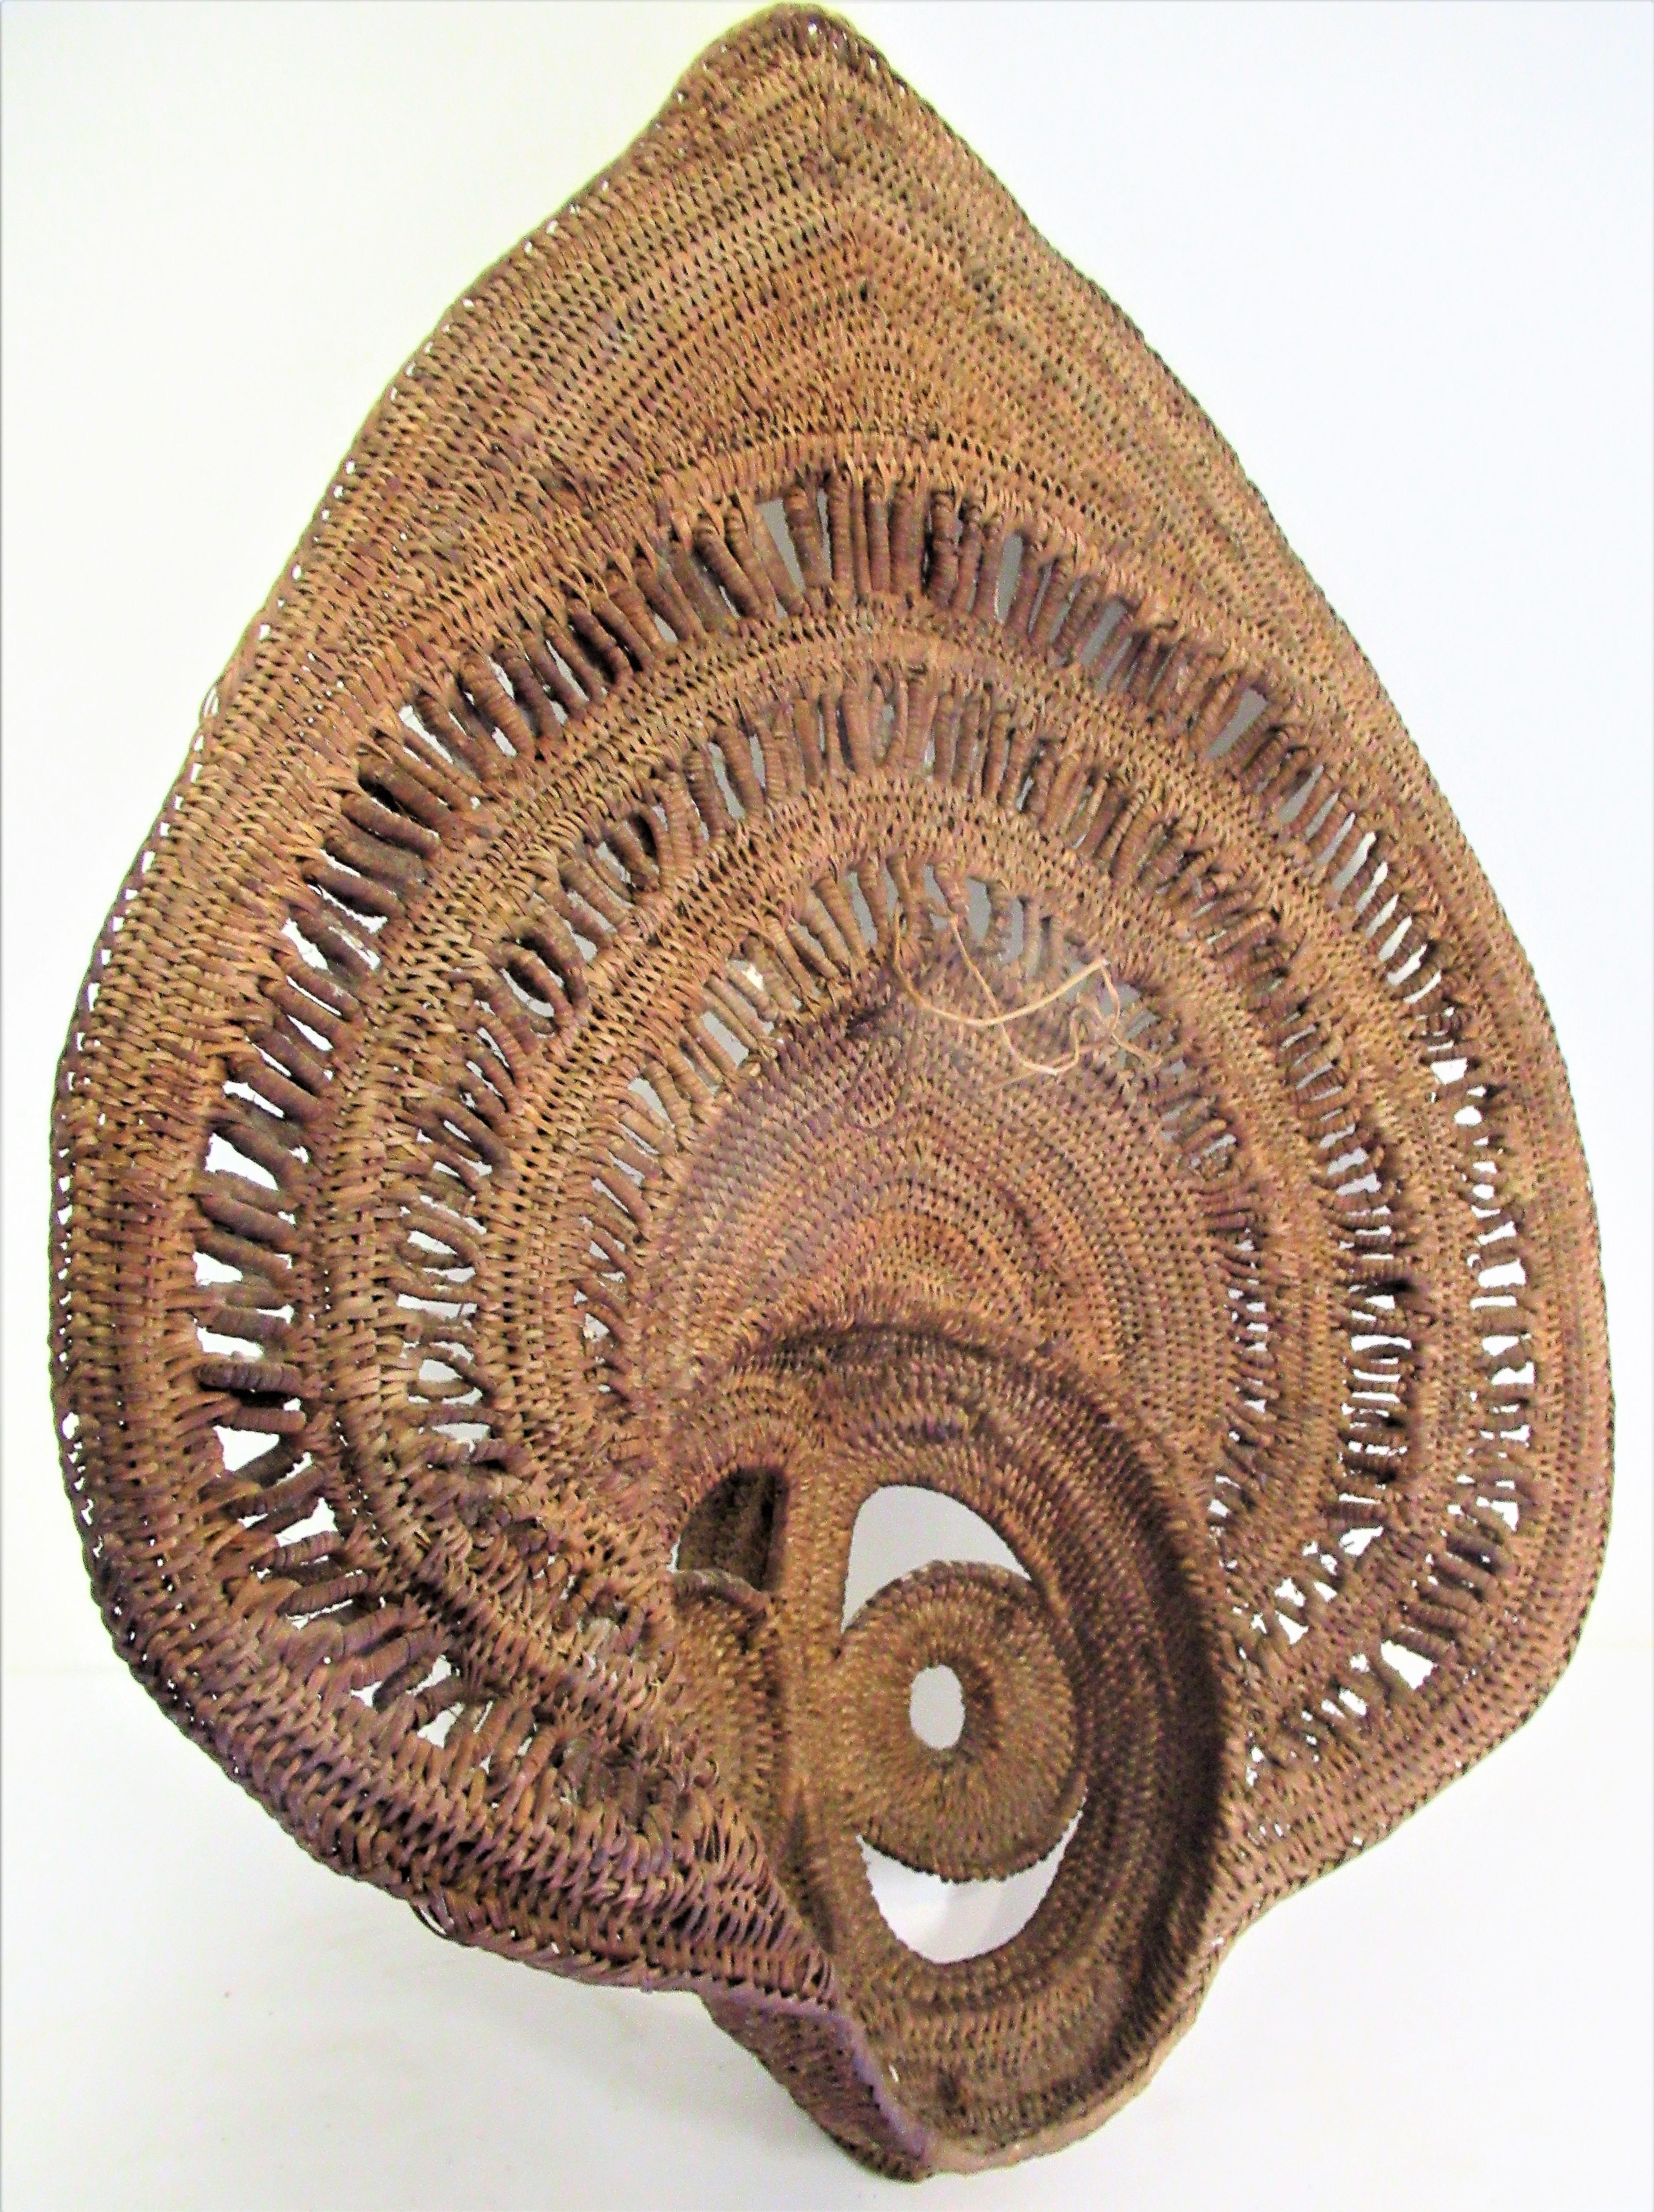 Hand-Woven Abelam Papua New Guinea Woven Yam Mask